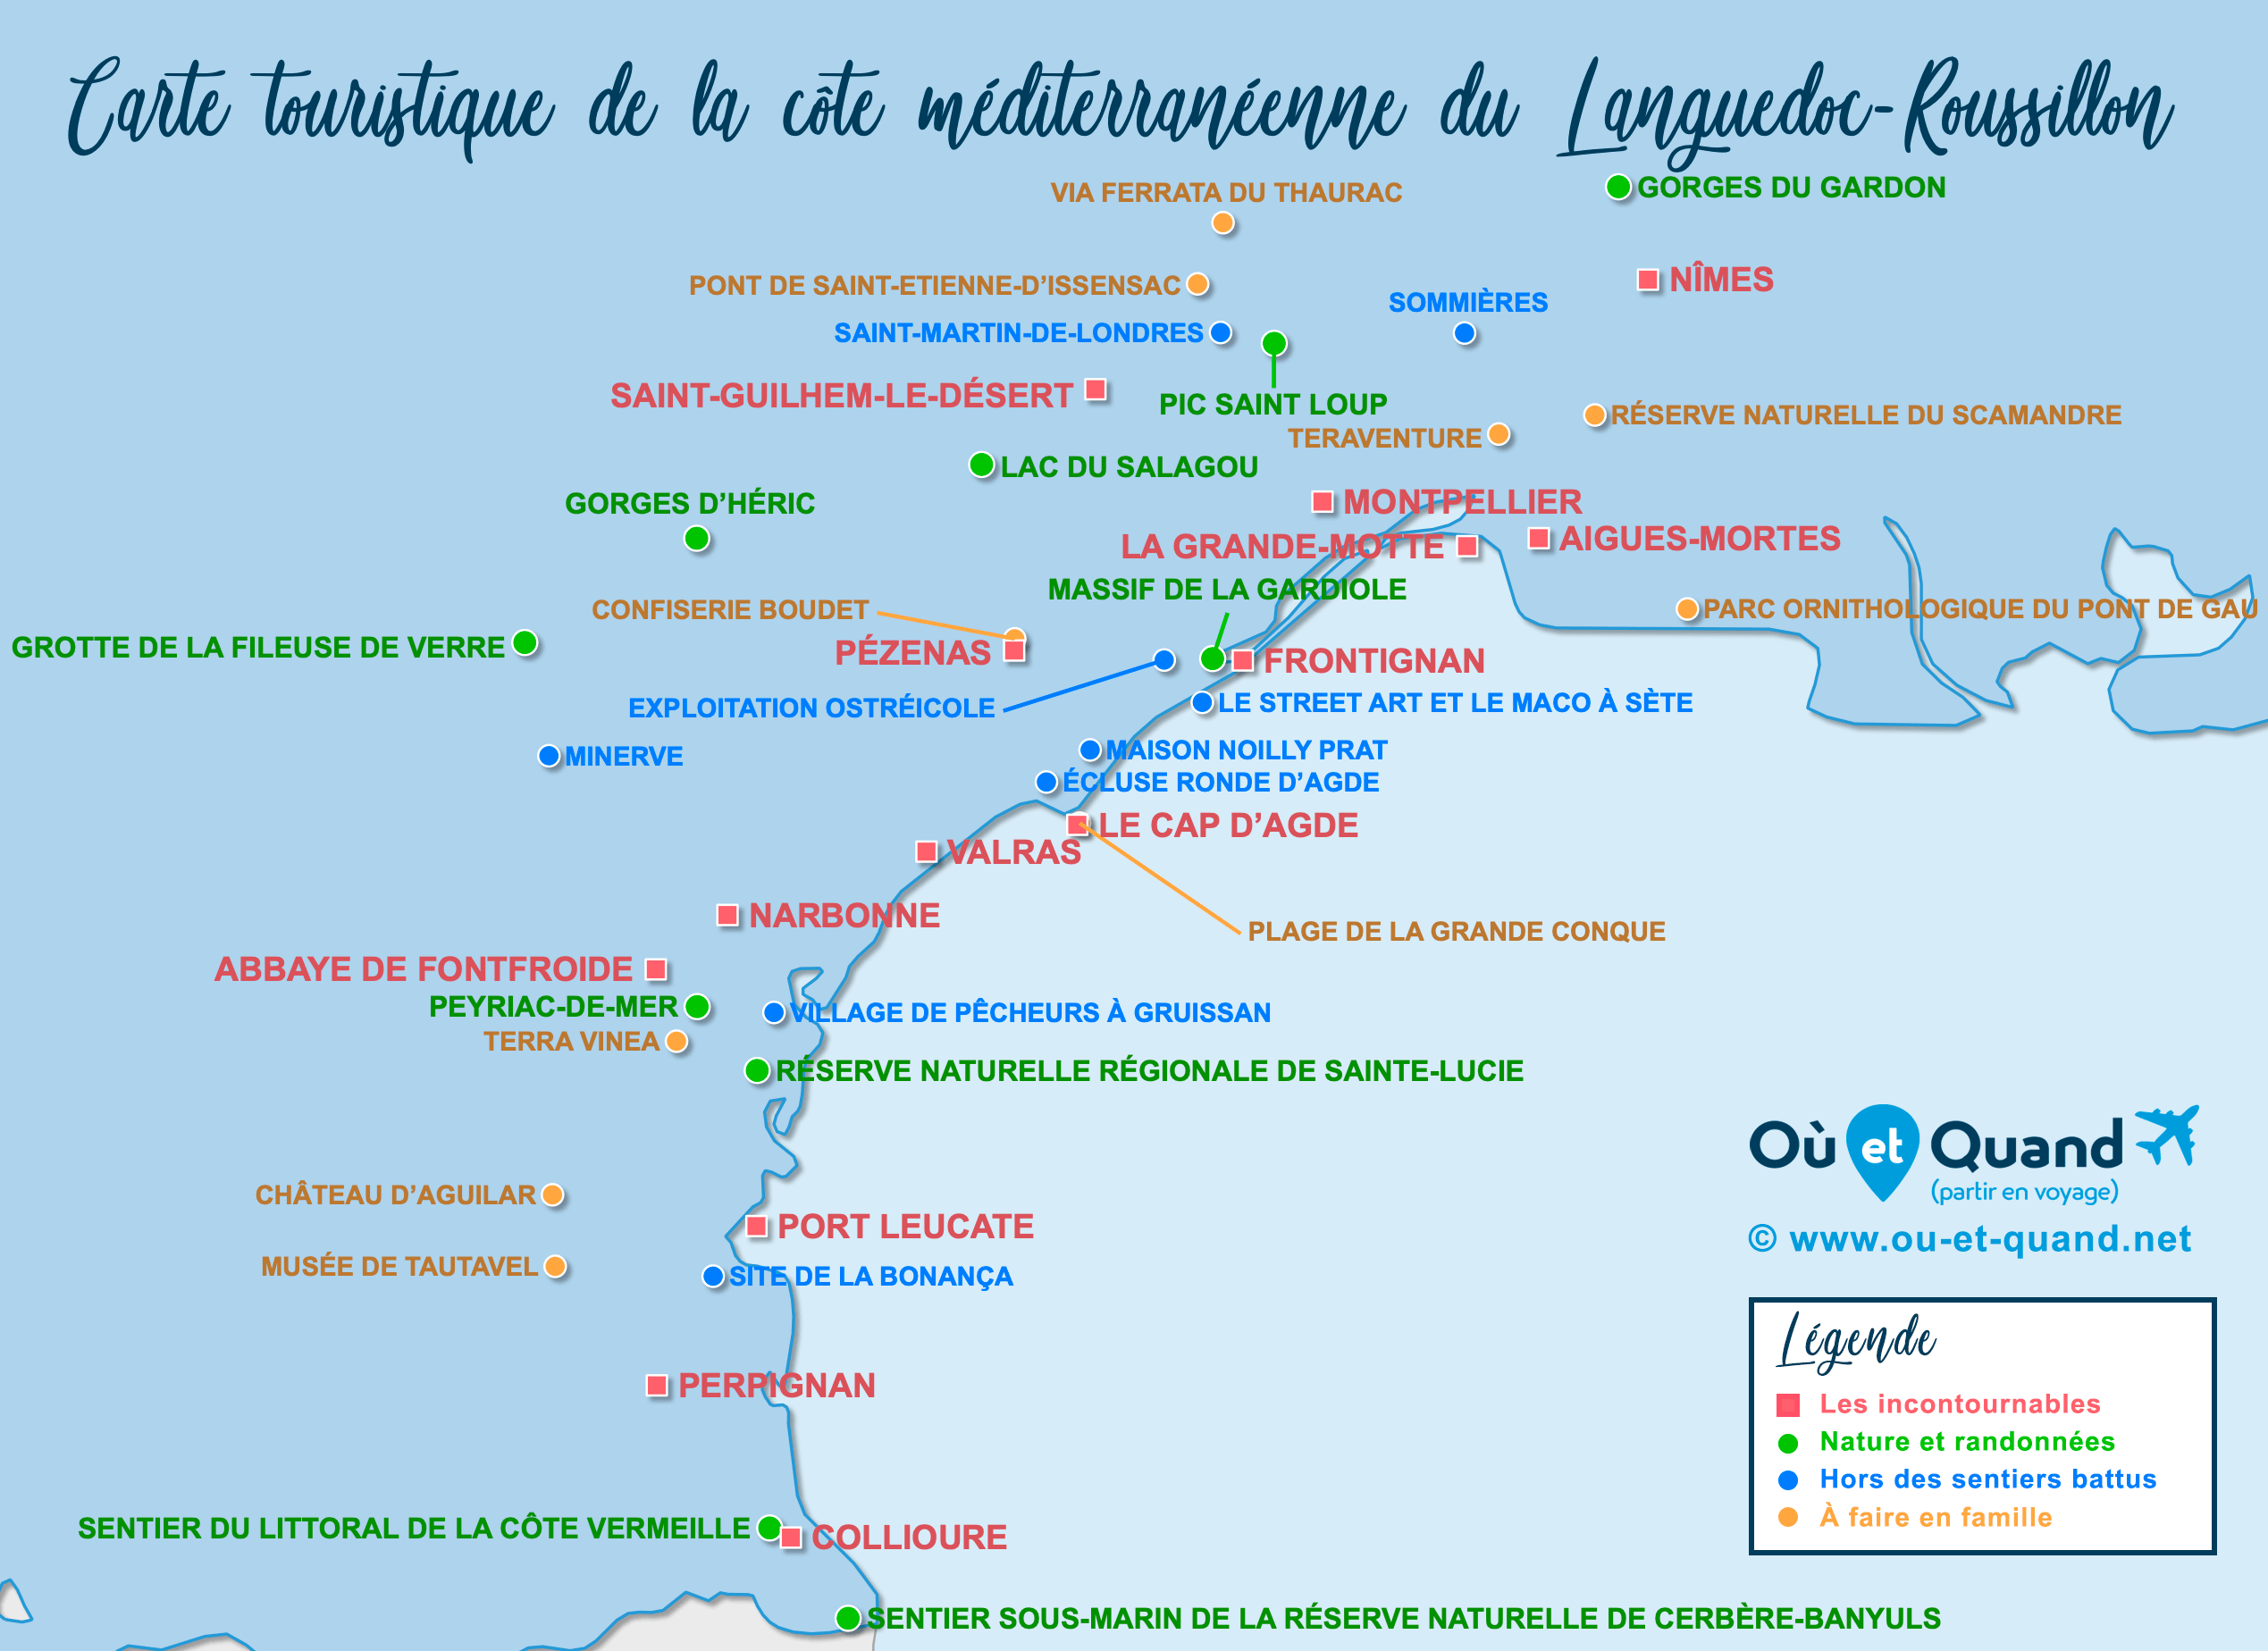 Carte Languedoc-Roussillon (côte méditerranéenne) : tous les lieux à visiter lors de votre voyage